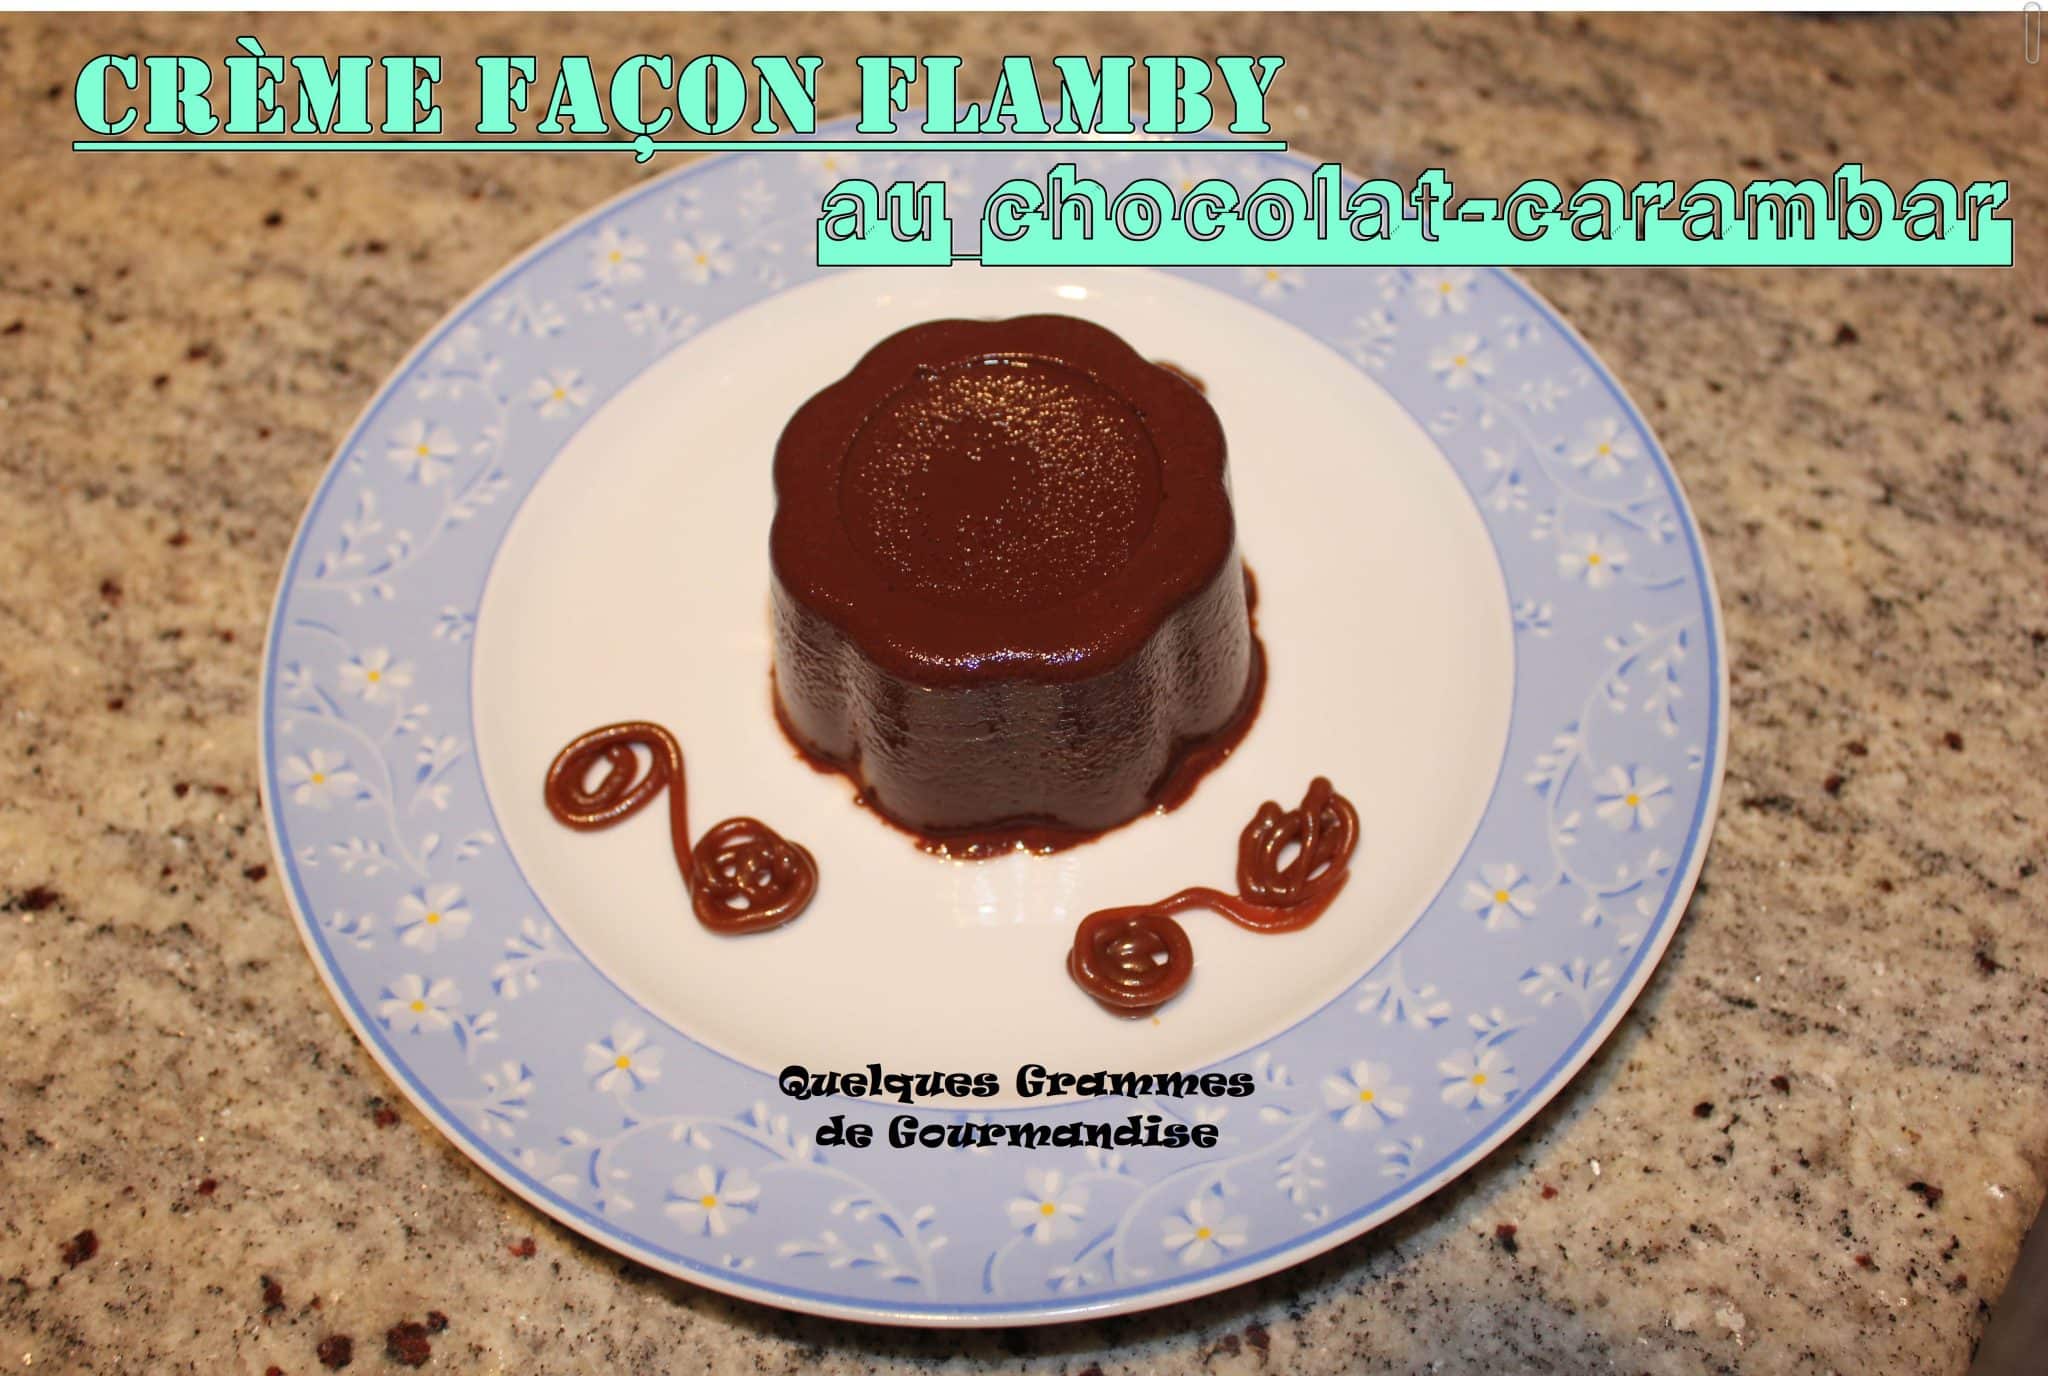 flanby chocolat carambar